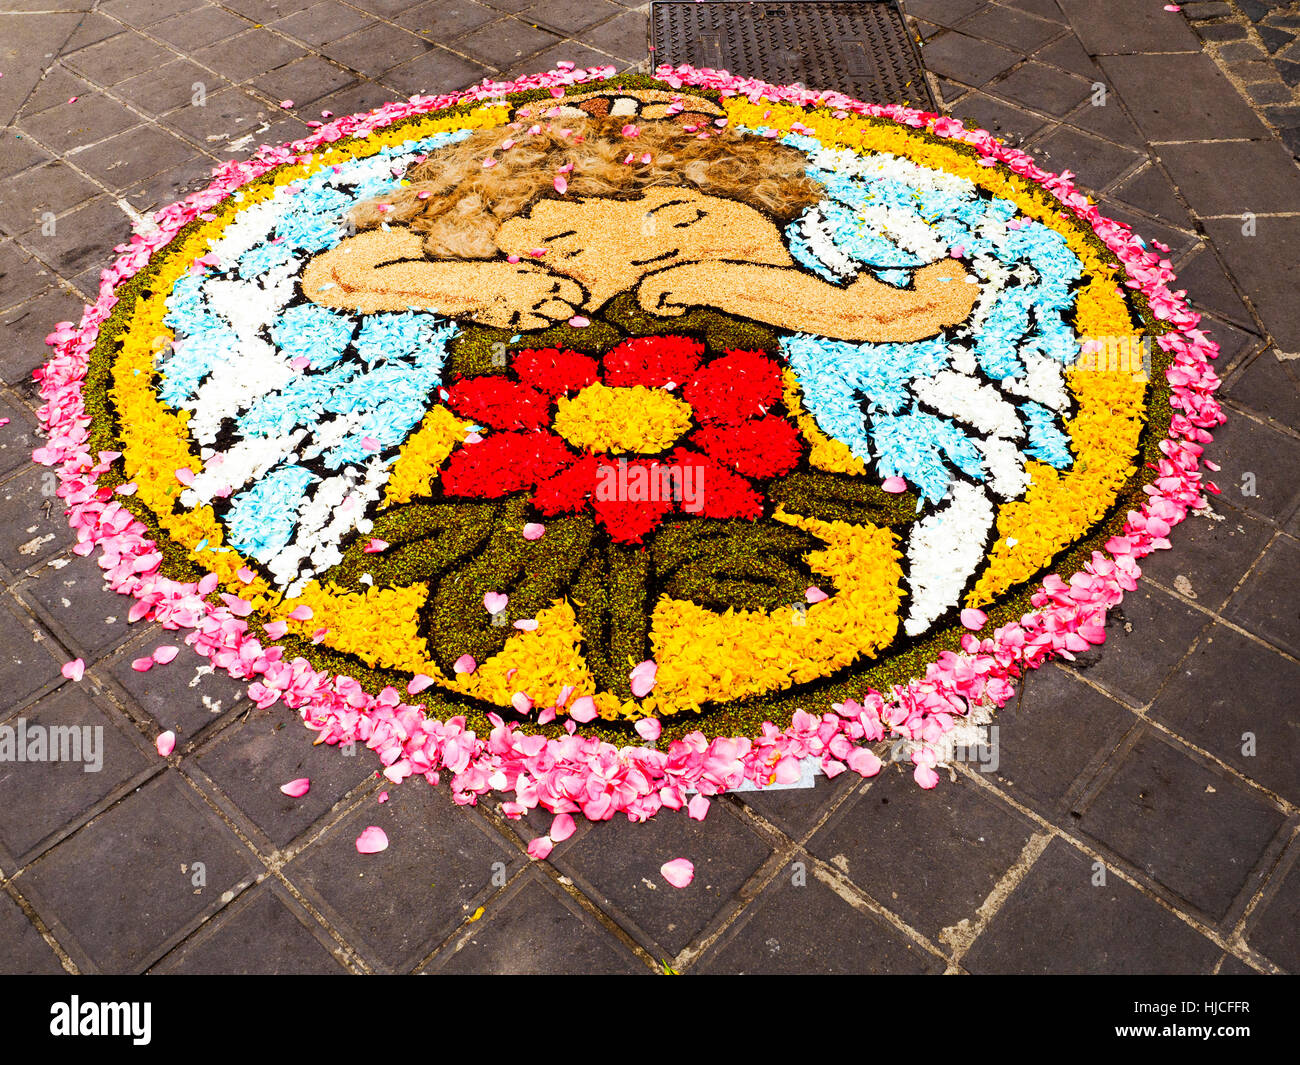 Une rue de la vieille ville de Bolsena lors du traditionnel tapis floral qui est fait chaque année pour le Corpus Christi - Bolsena, Italie Banque D'Images